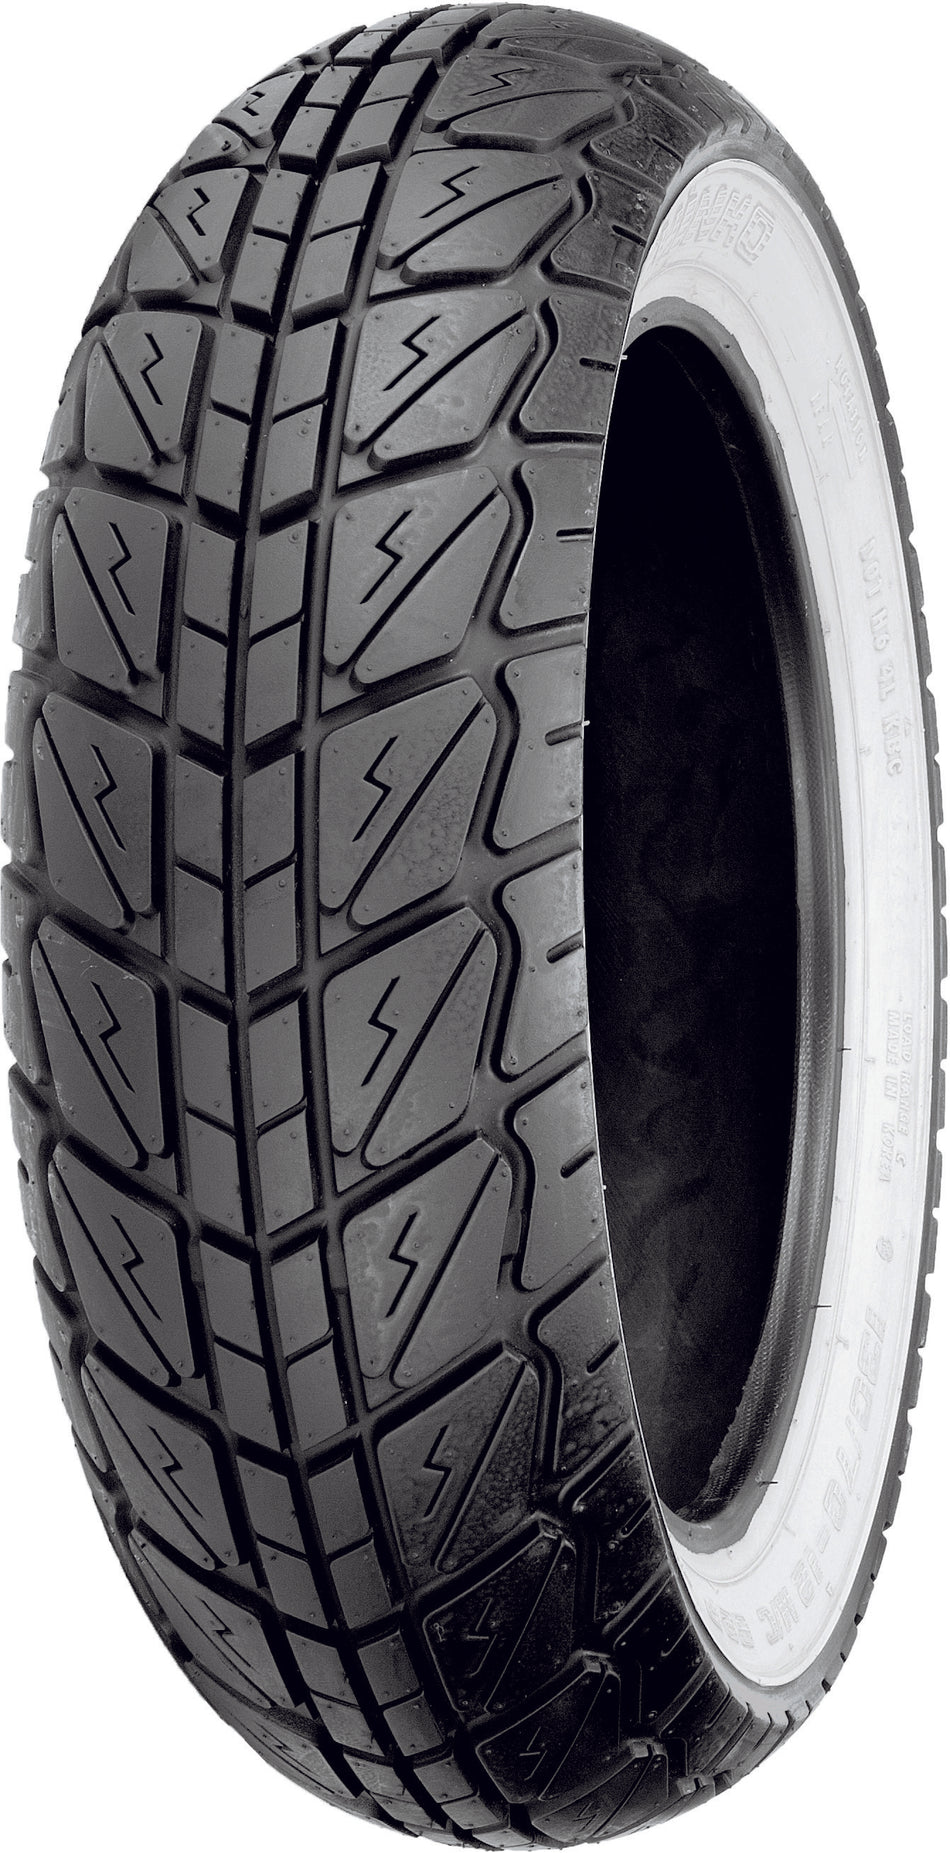 SHINKO Tire 723 Series Front/Rear 140/70-12 65p Bias Tl W/W 87-4259